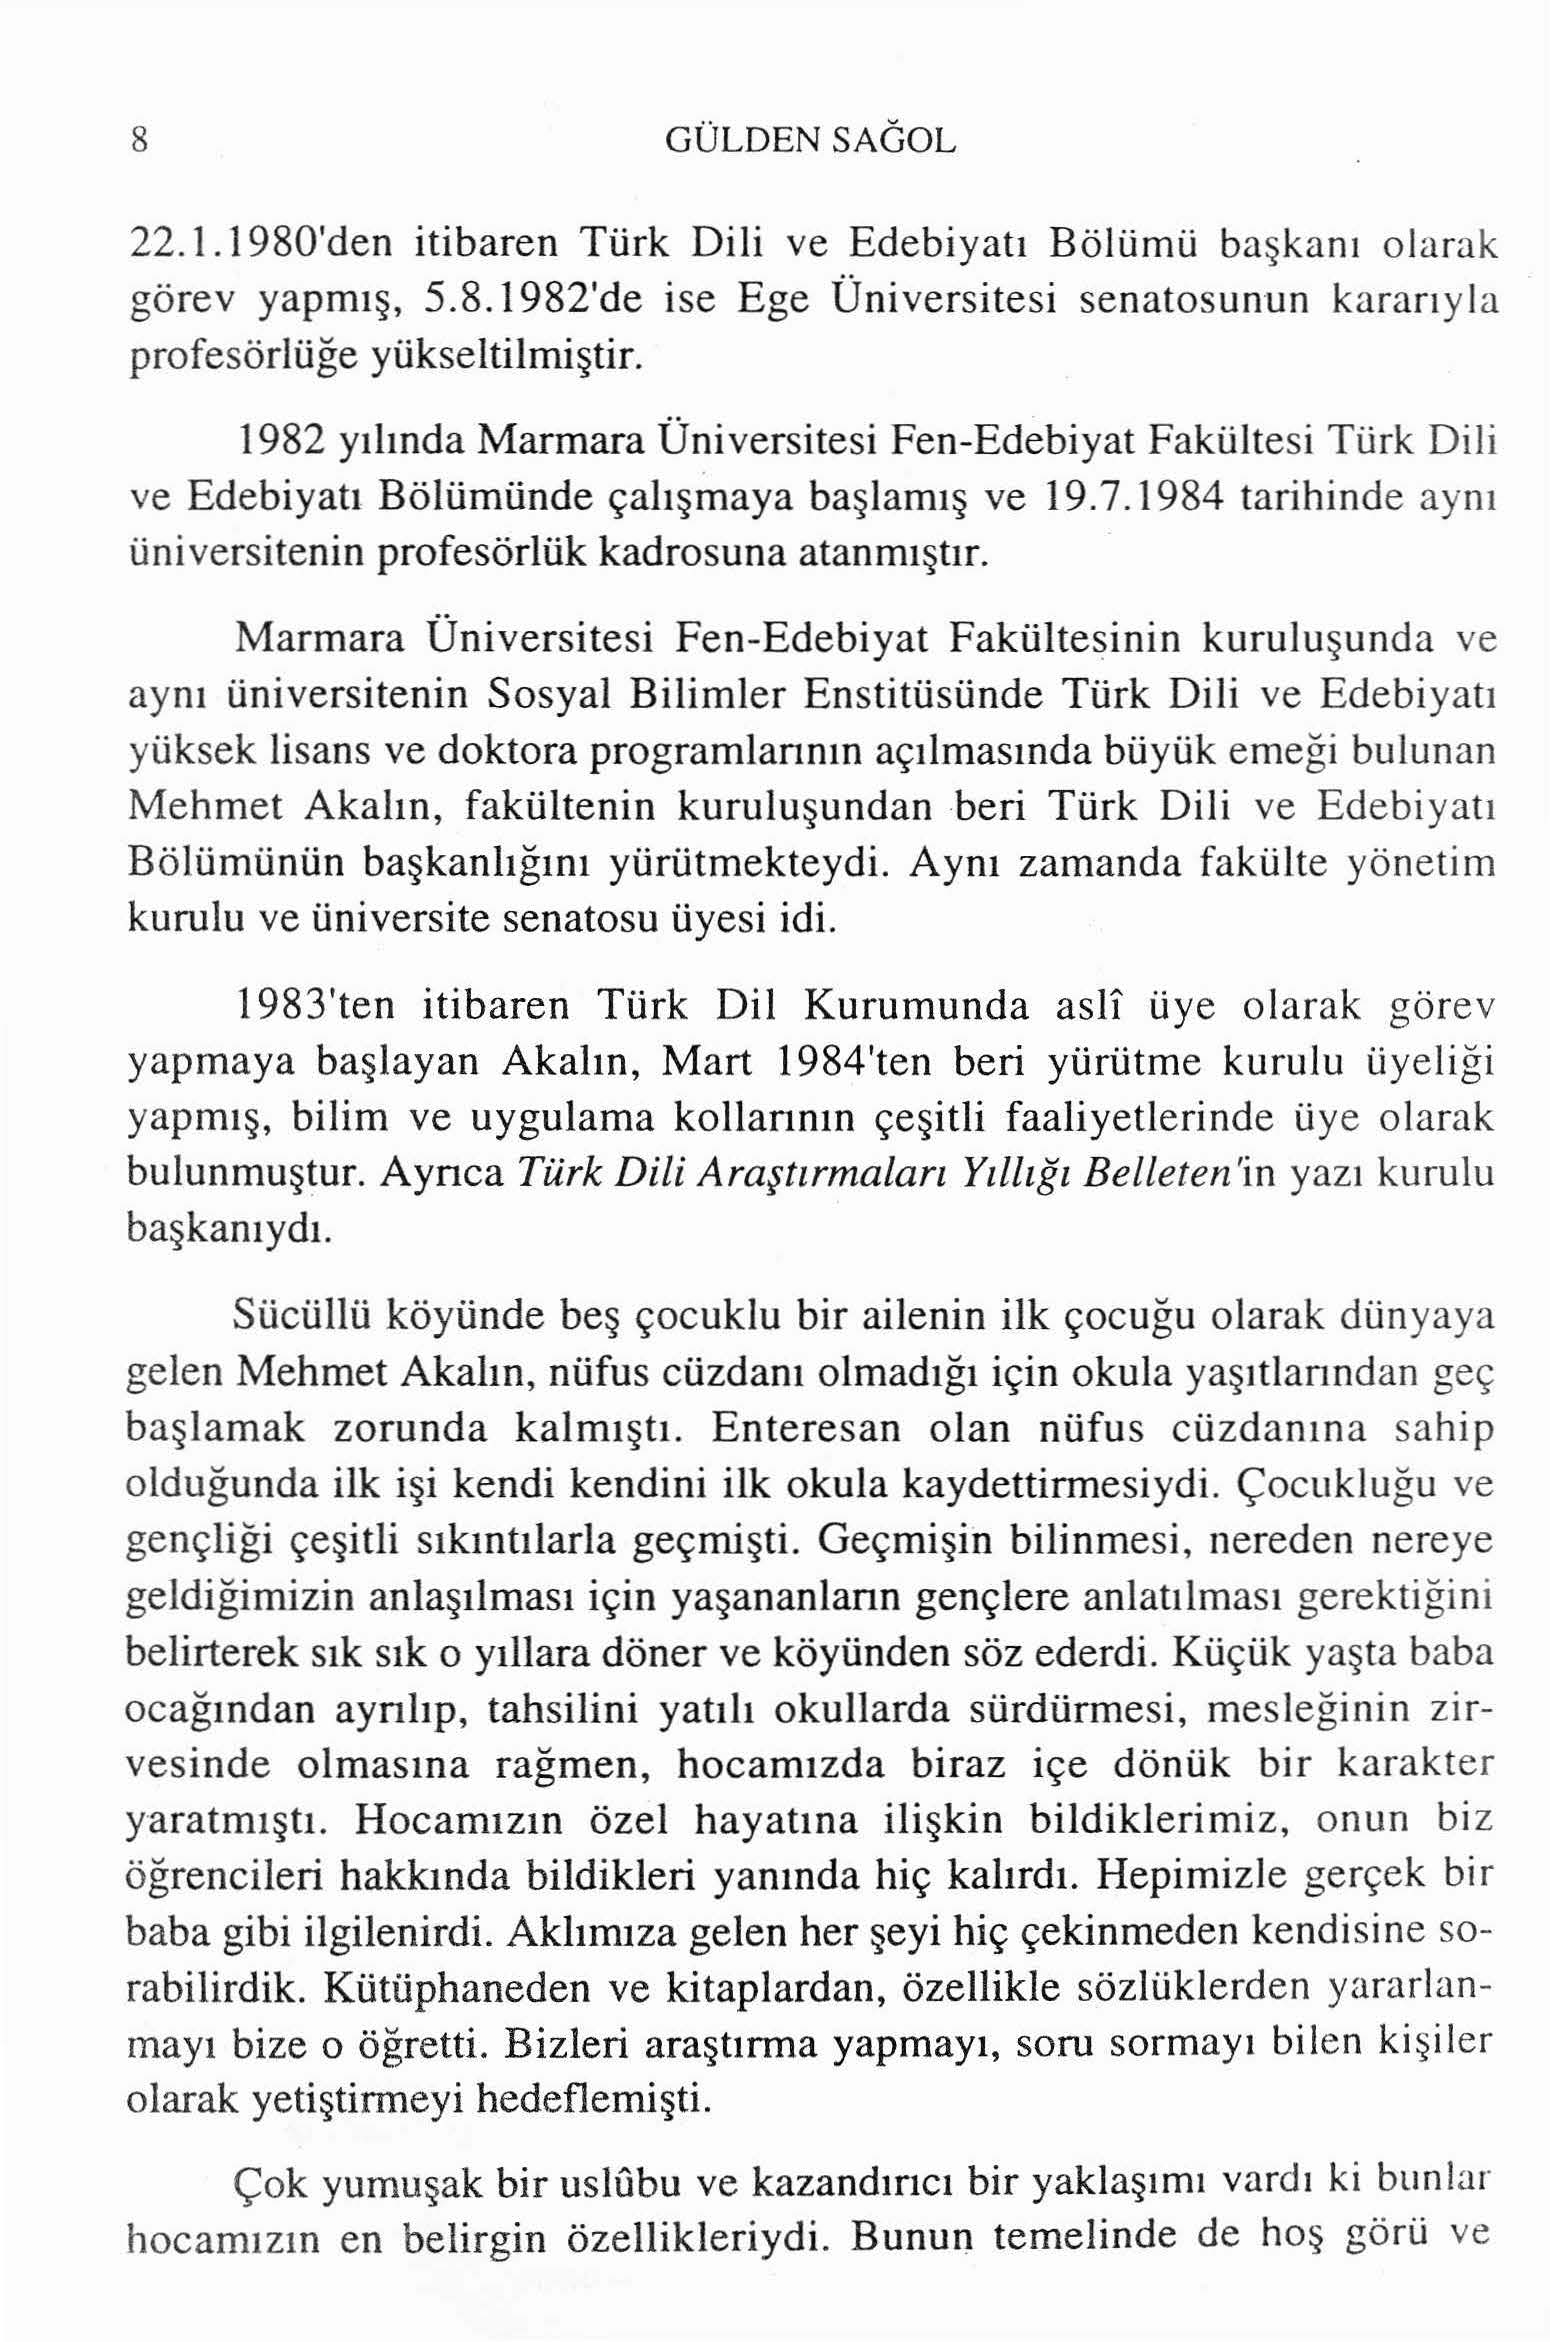 8 GÜLDENSAGOL 22.1.1980'den itibaren Türk Dili ve Edebiyatı Bölümü ba ş kanı olarak görev yapmış, 5.8.1982'de ise Ege Üniversitesi senatosunun kararıyla profesörlüğe yükseltilmiştir.